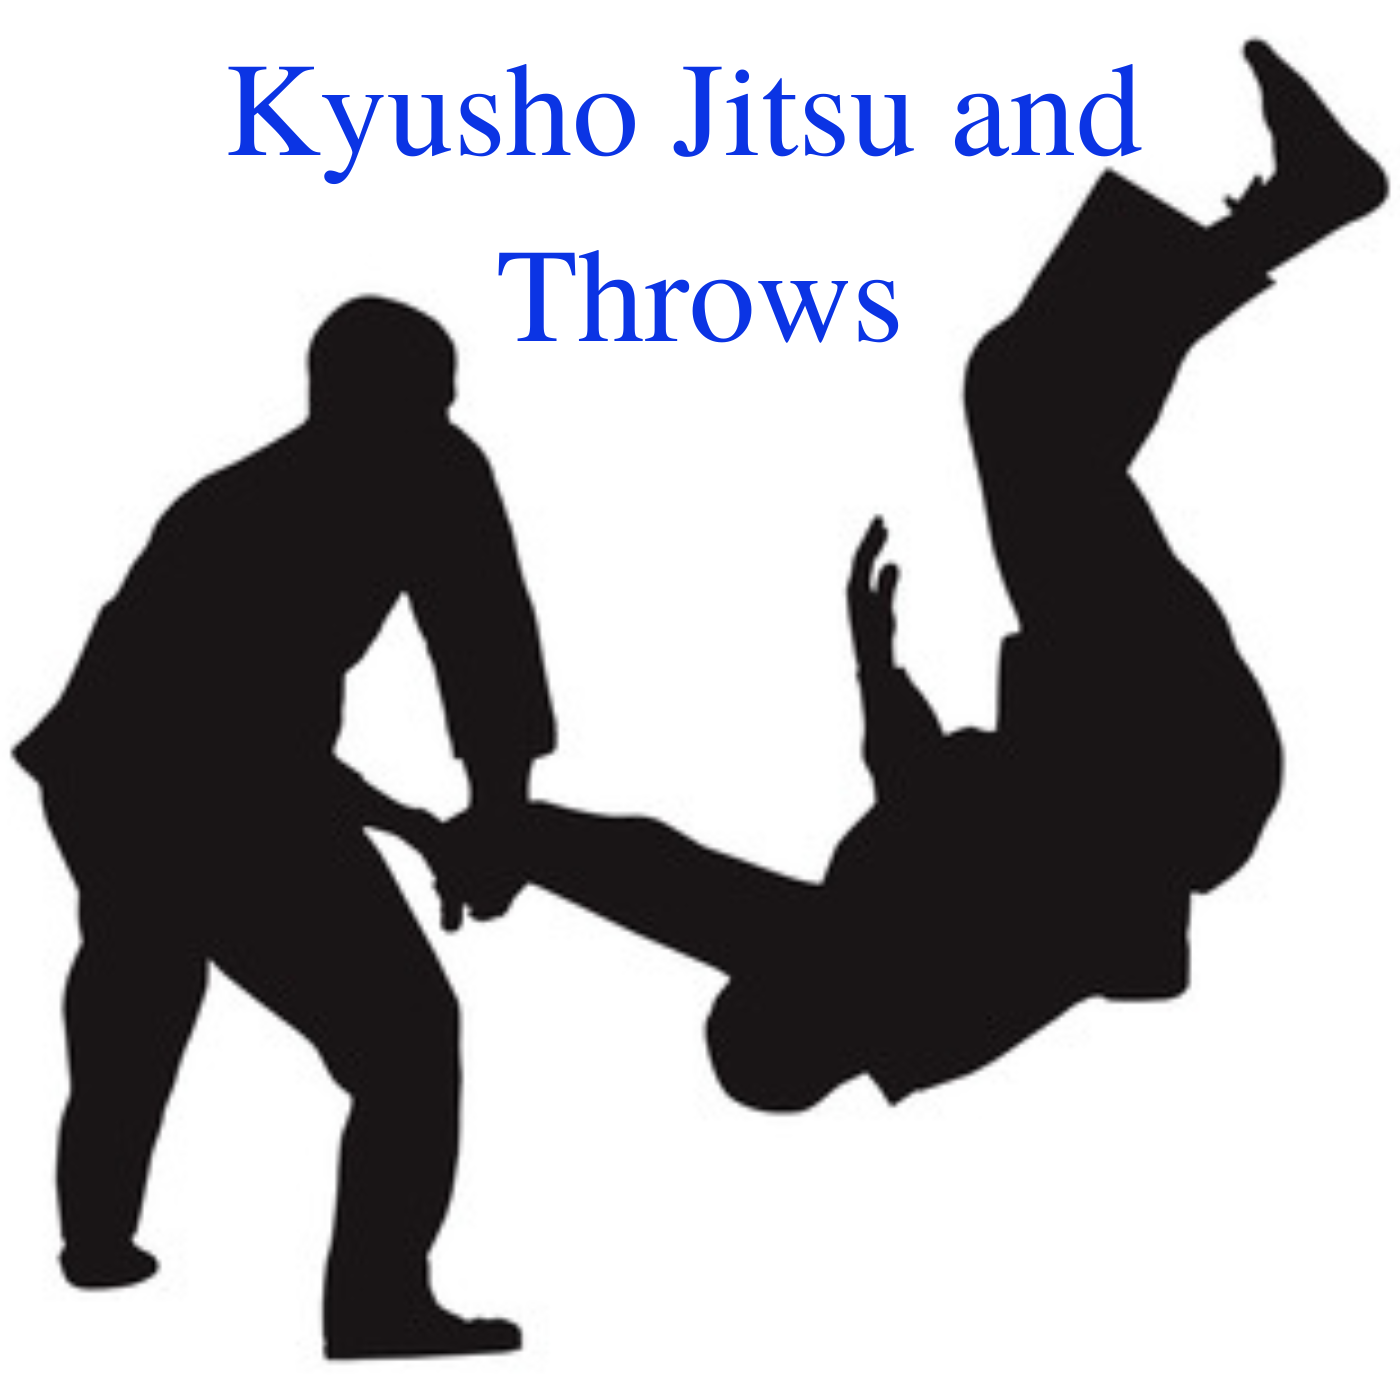 Kyusho Jitsu and Throws